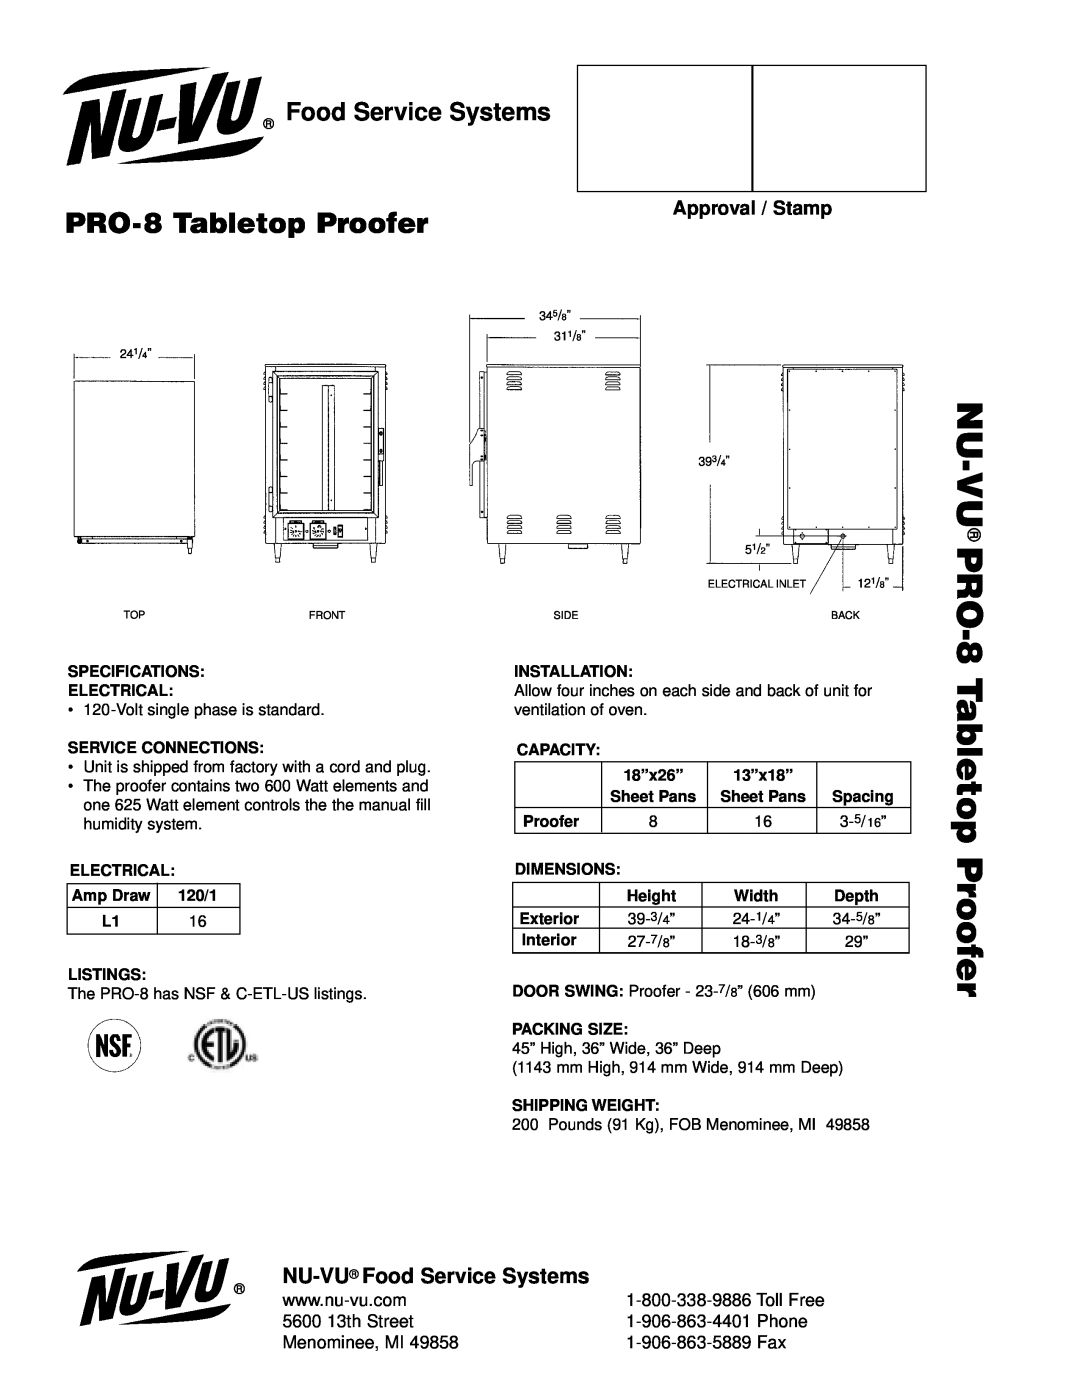 Nu-Vu Pro-8 NU-VU PRO-8, PRO-8Tabletop Proofer, NU-VU Food Service Systems, Approval / Stamp, 5600 13th Street 